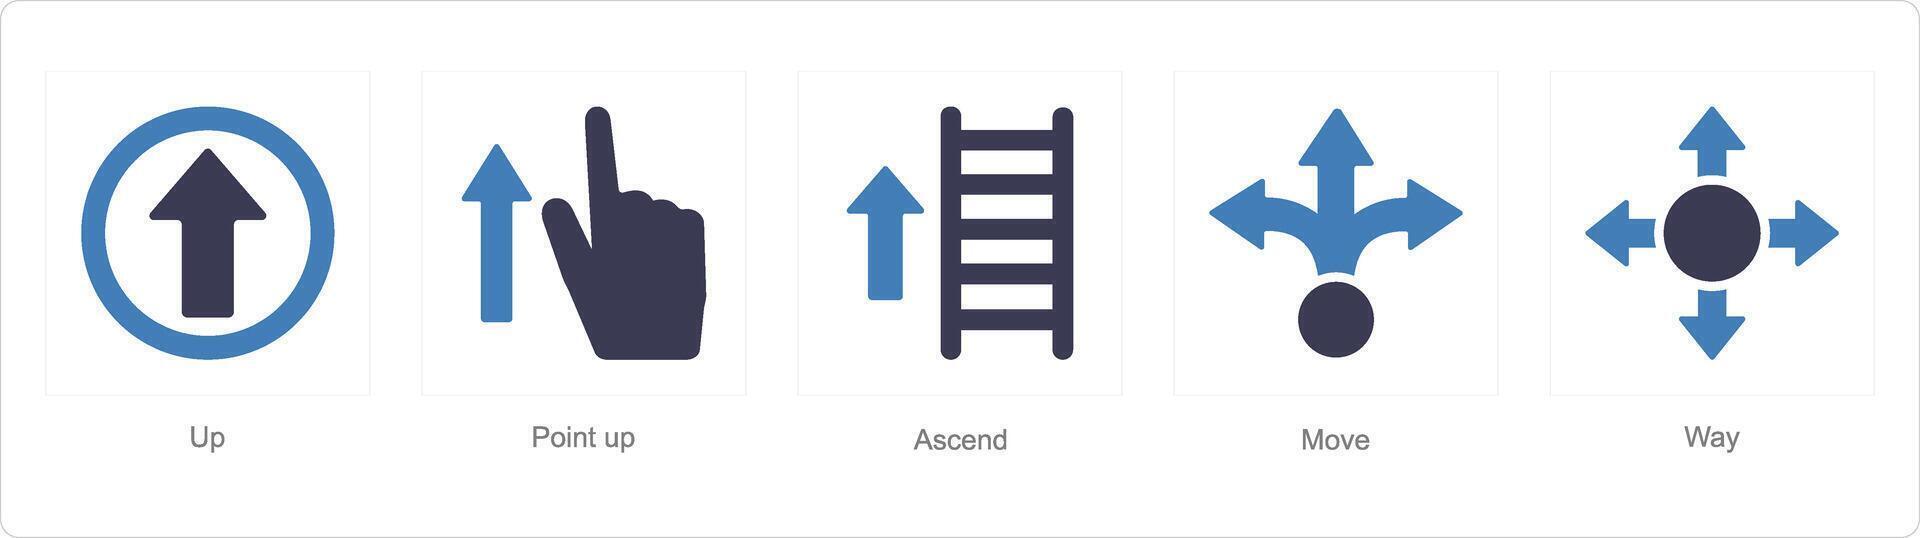 un' impostato di 5 direzione icone come su, punto su, Ascend vettore